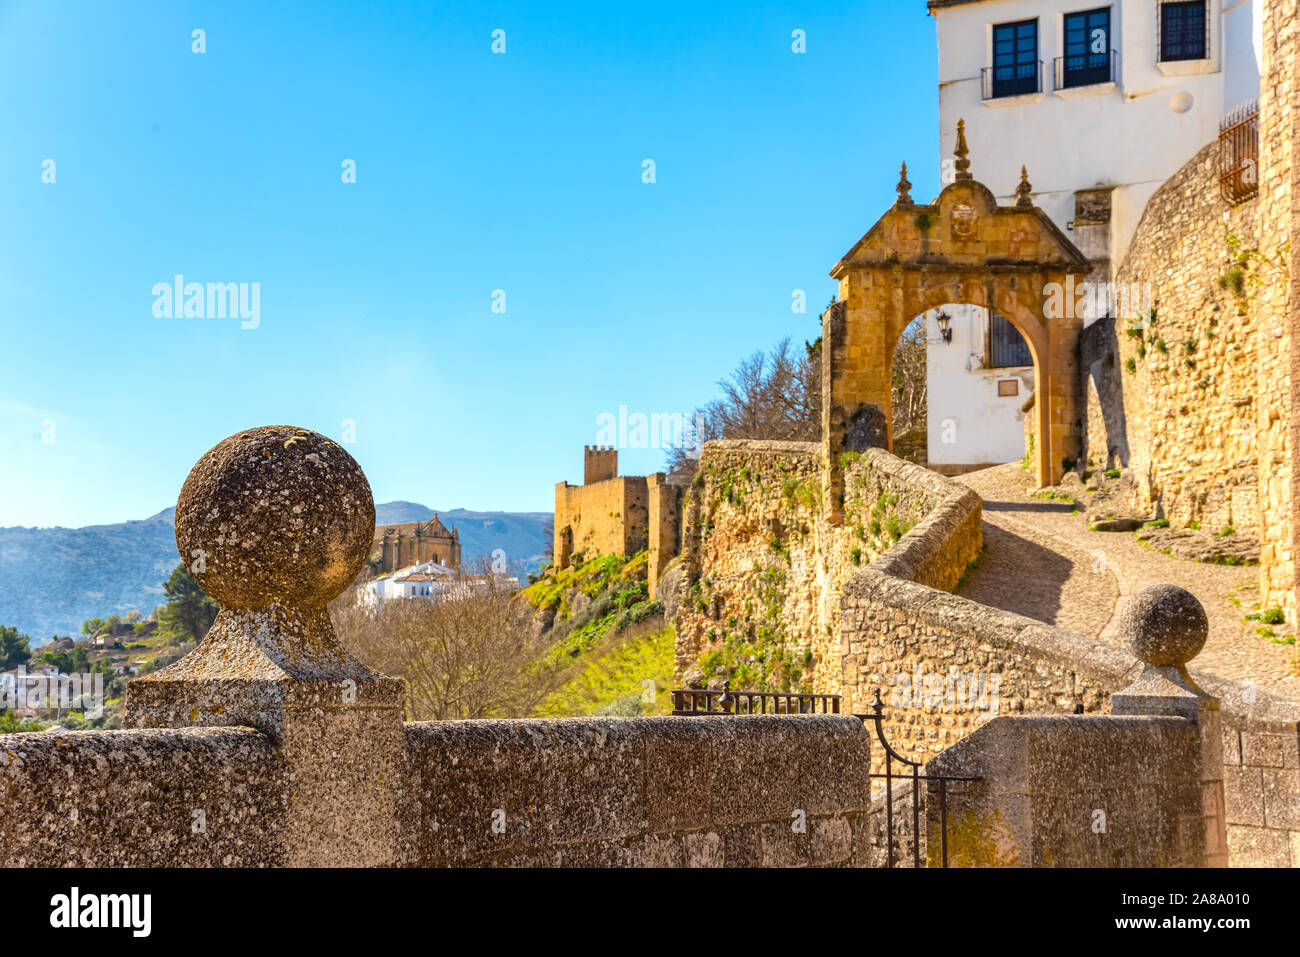 Puerta de Felipe V oder Arco de Felipe V, historischen und künstlerischen Zentrum von Ronda, Malaga, Andalusien, Spanien, Iberische Halbinsel Stockfoto